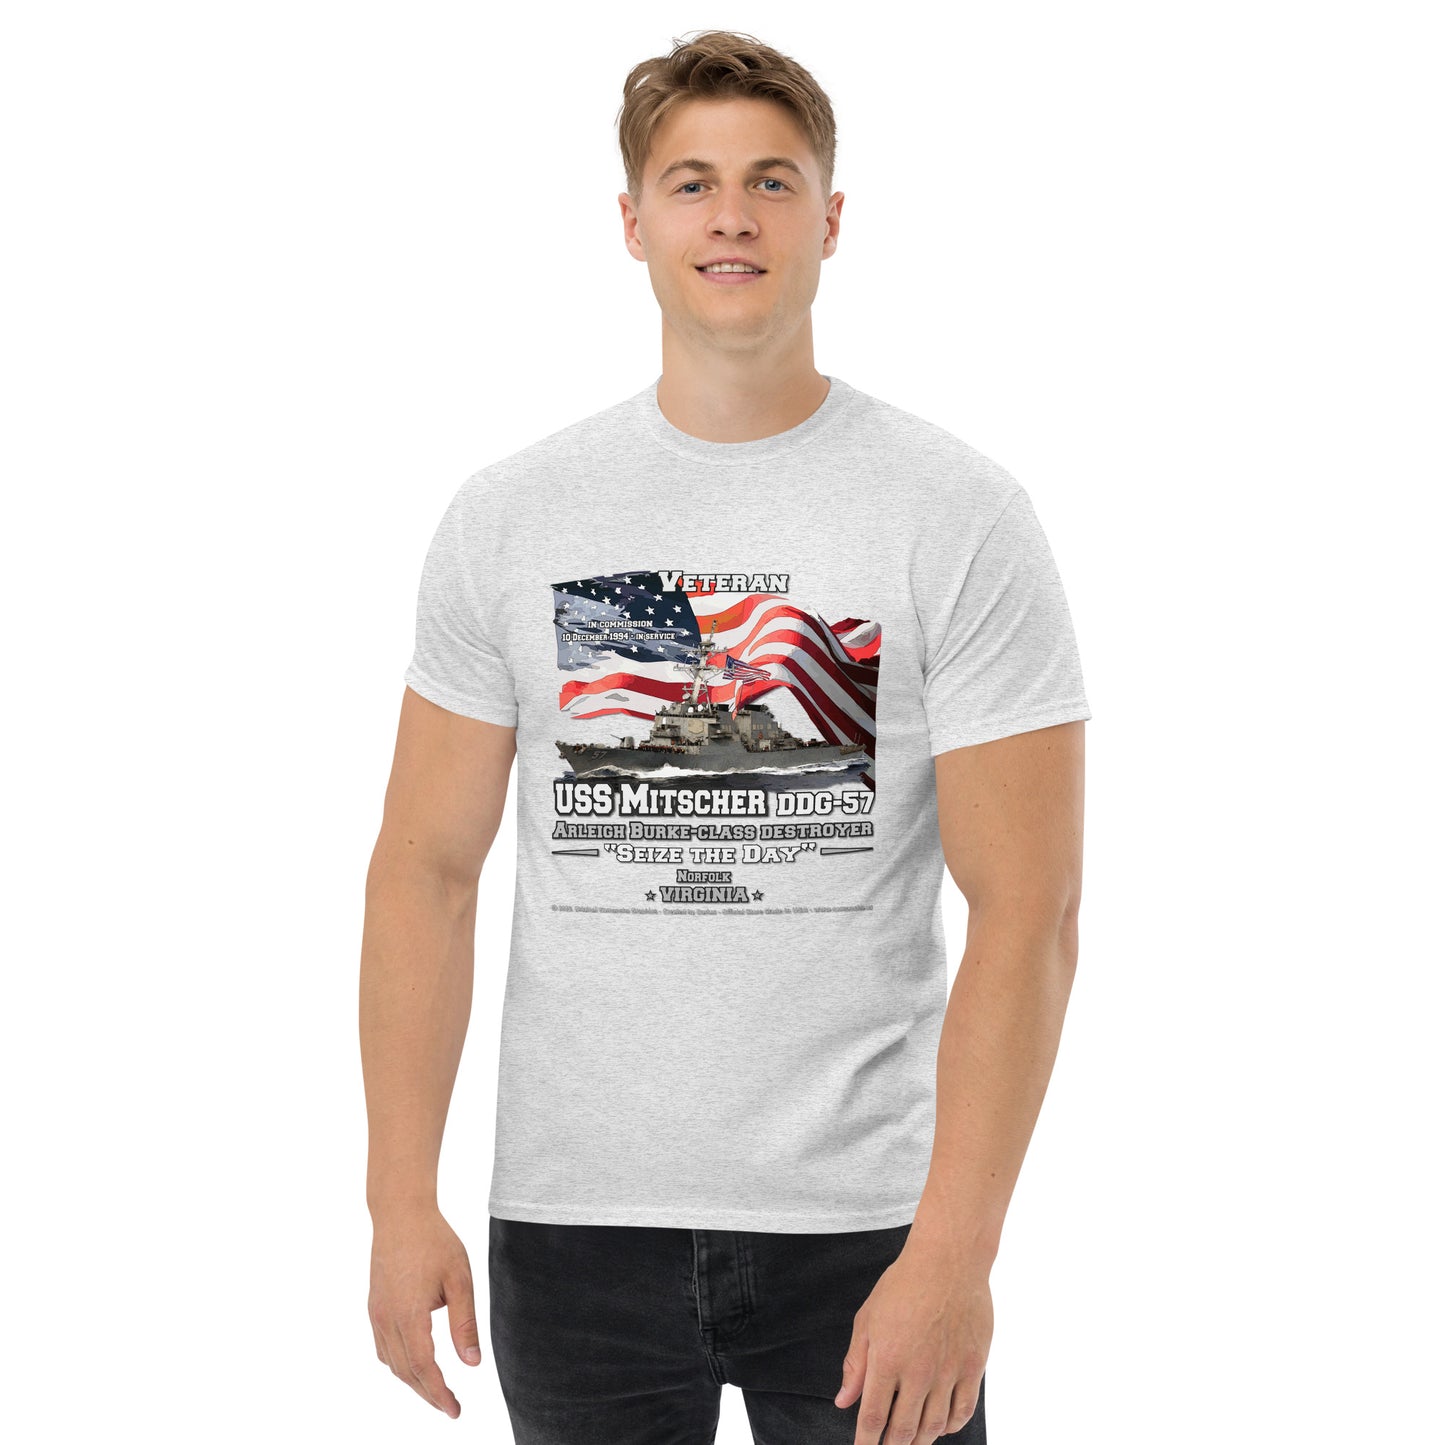 USS MITSCHER DDG-57 Destroyer Veterans T-Shirt